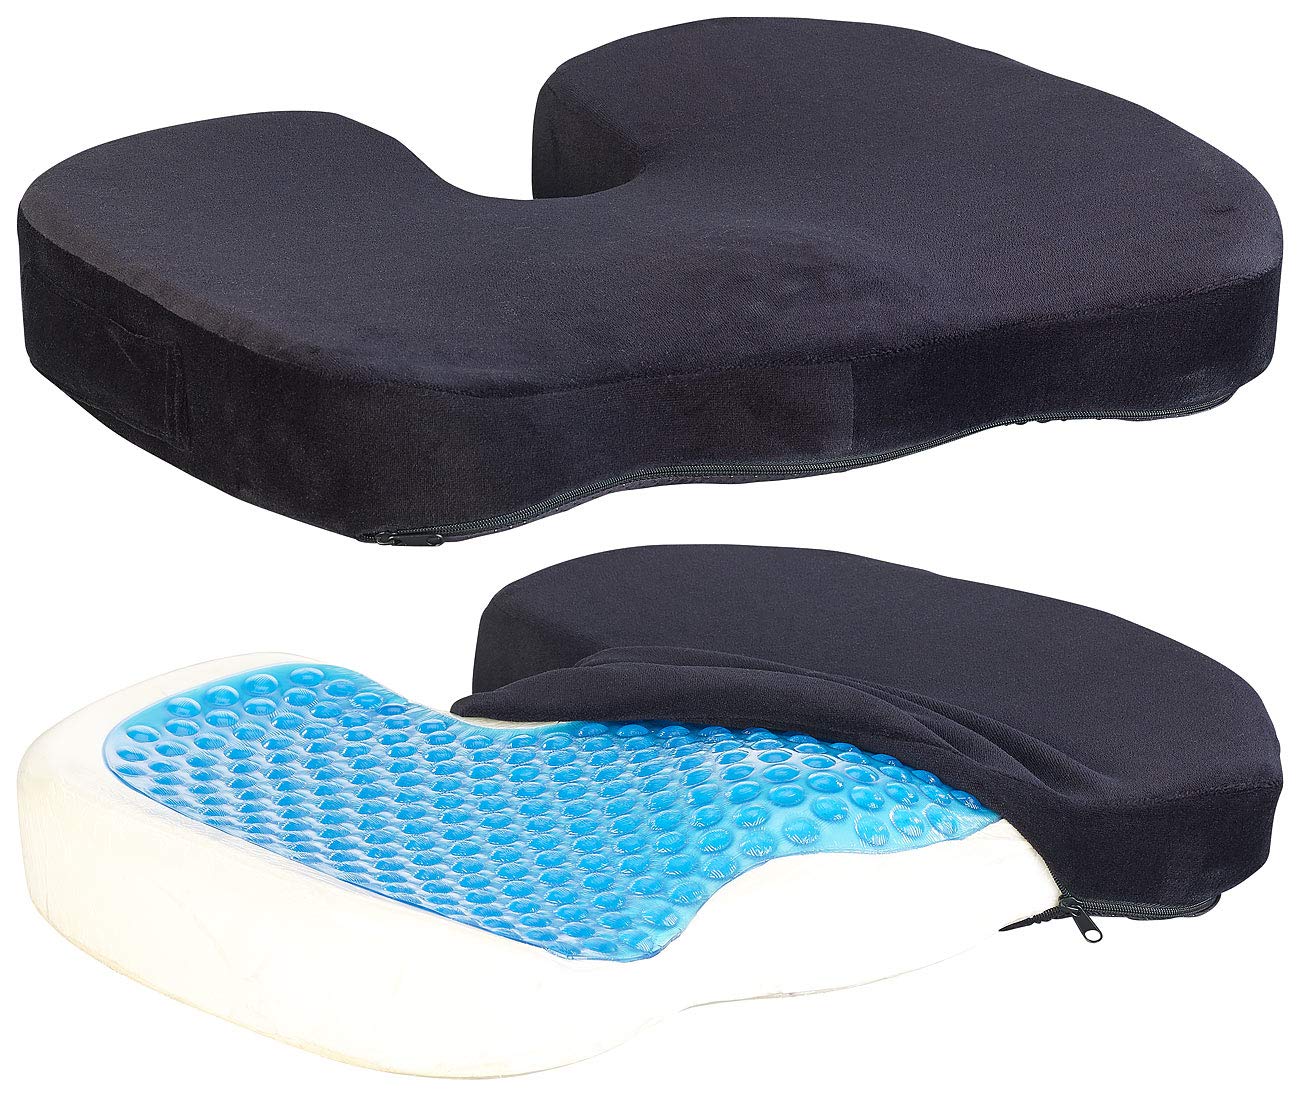 Newgen Medicals Gelkissen: 2er-Set Memory-Foam-Sitzkissen mit Gel-Schicht und Anti-Rutsch-Bezug (Sitzkissen mit Geleinlage, Sitz-Kissen, Geschenkidee)